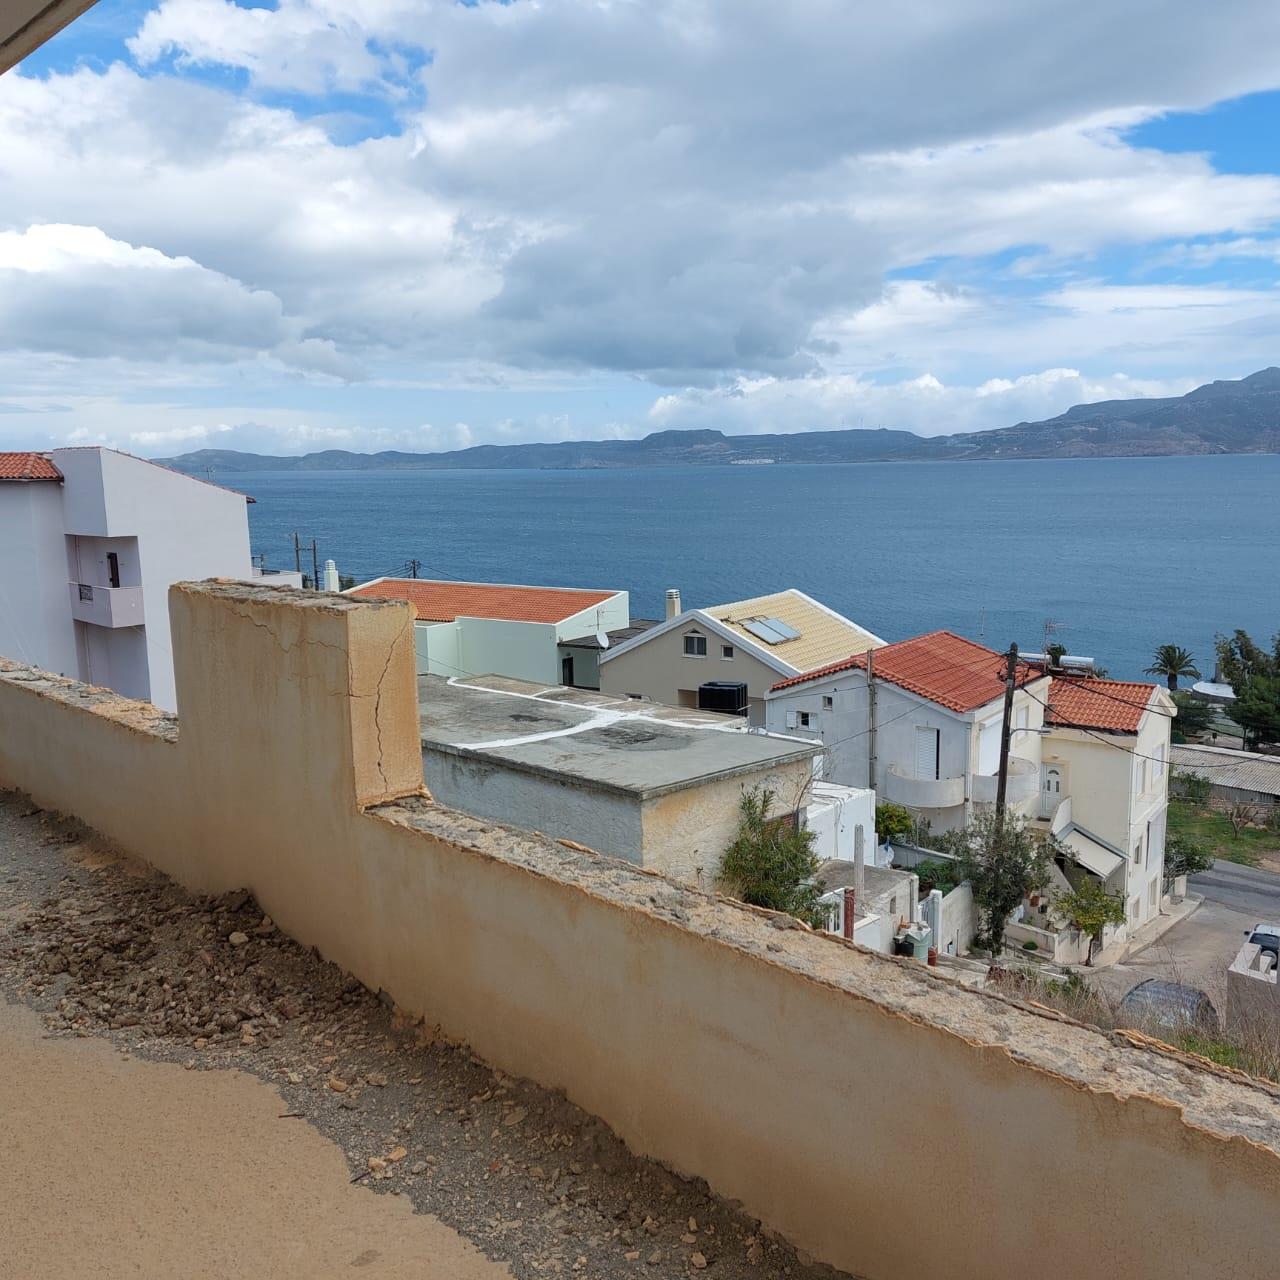 Ημιτελές διαμέρισμα δευτέρου ορόφου μόλις 160 μέτρα από τη θάλασσα στη Σητεία, Ανατολική Κρήτη.